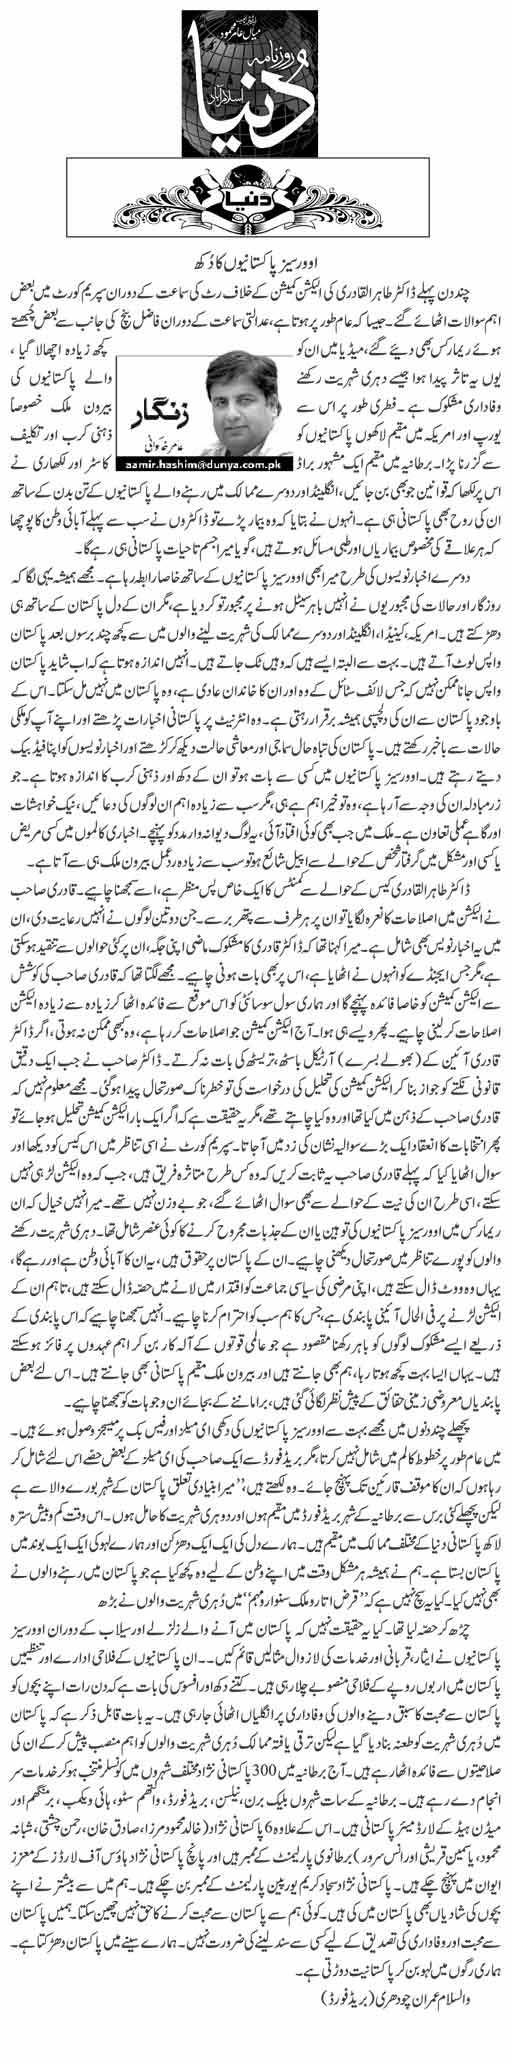 Minhaj-ul-Quran  Print Media Coverage Daily Dunya (Article)